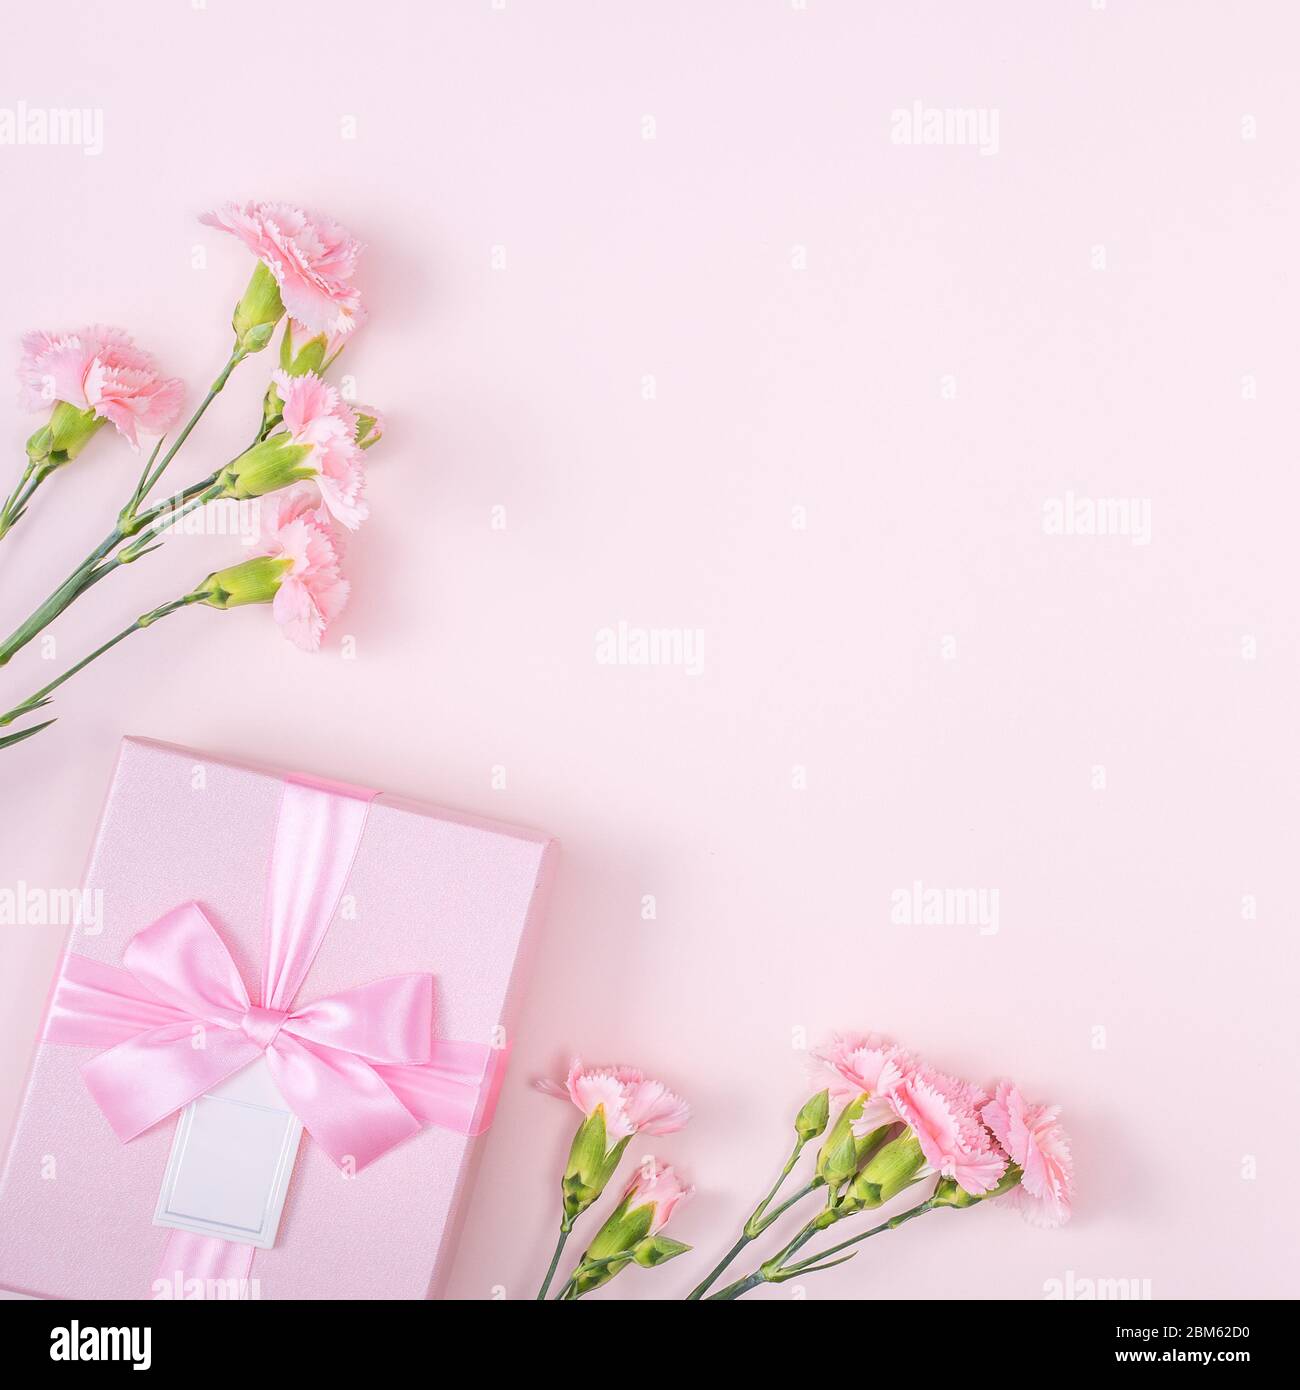 Thiết kế nền ngày của mẹ và ngày Valentine đẹp sẽ giúp bạn tạo ra các bức ảnh độc đáo và tuyệt vời nhất để tặng người mẹ yêu quý của mình. Hãy khám phá sự kết hợp độc đáo này ngay hôm nay. 